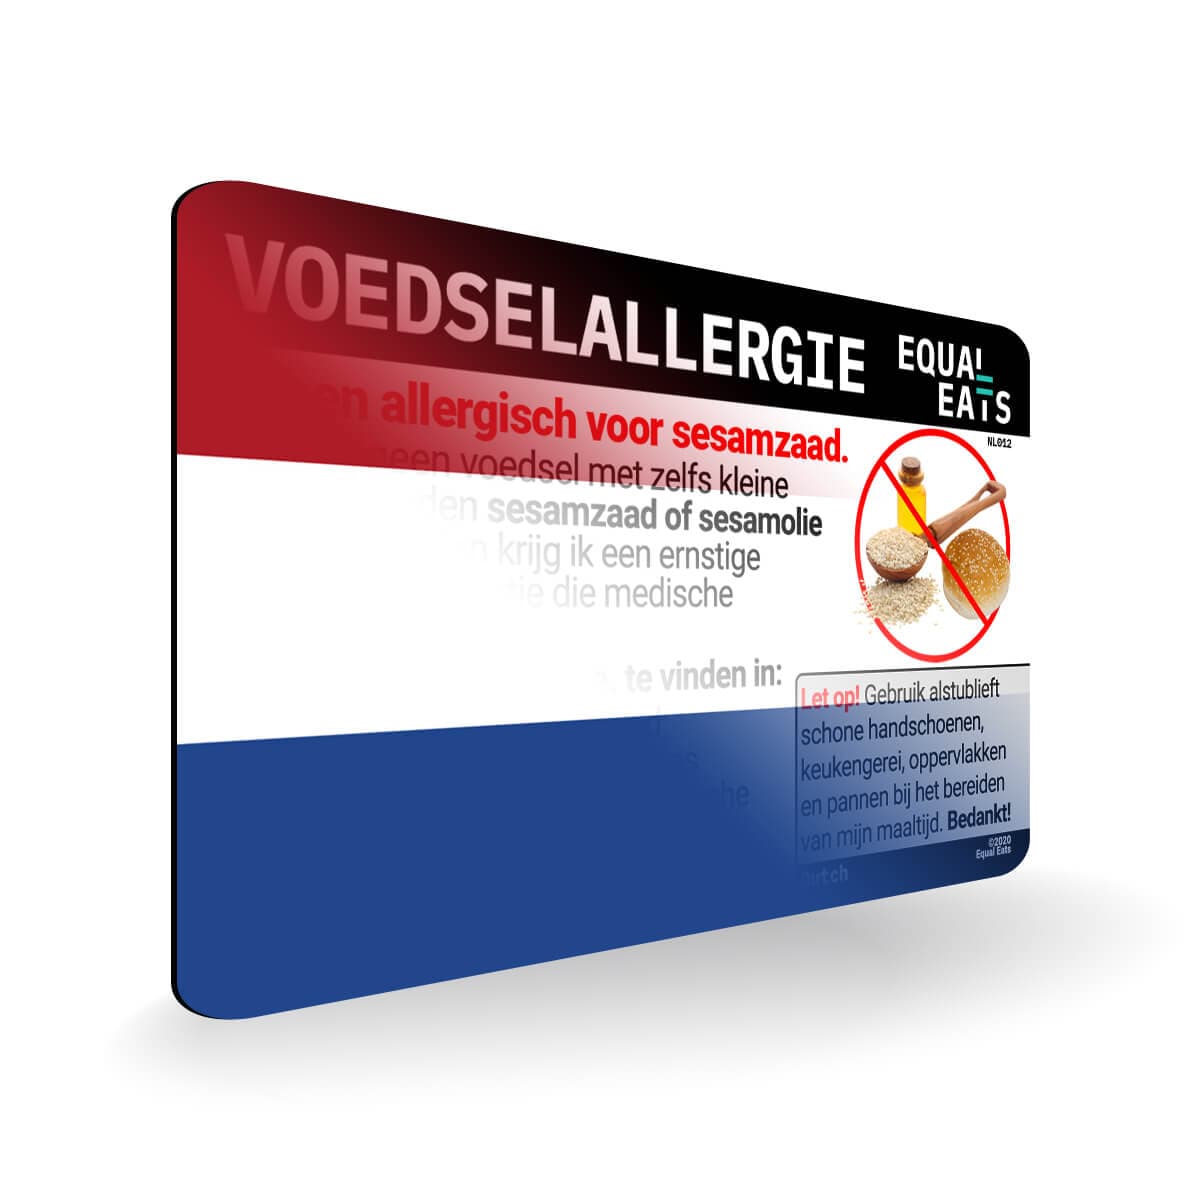 Sesame Allergy in Dutch. Sesame Allergy Card for Netherlands